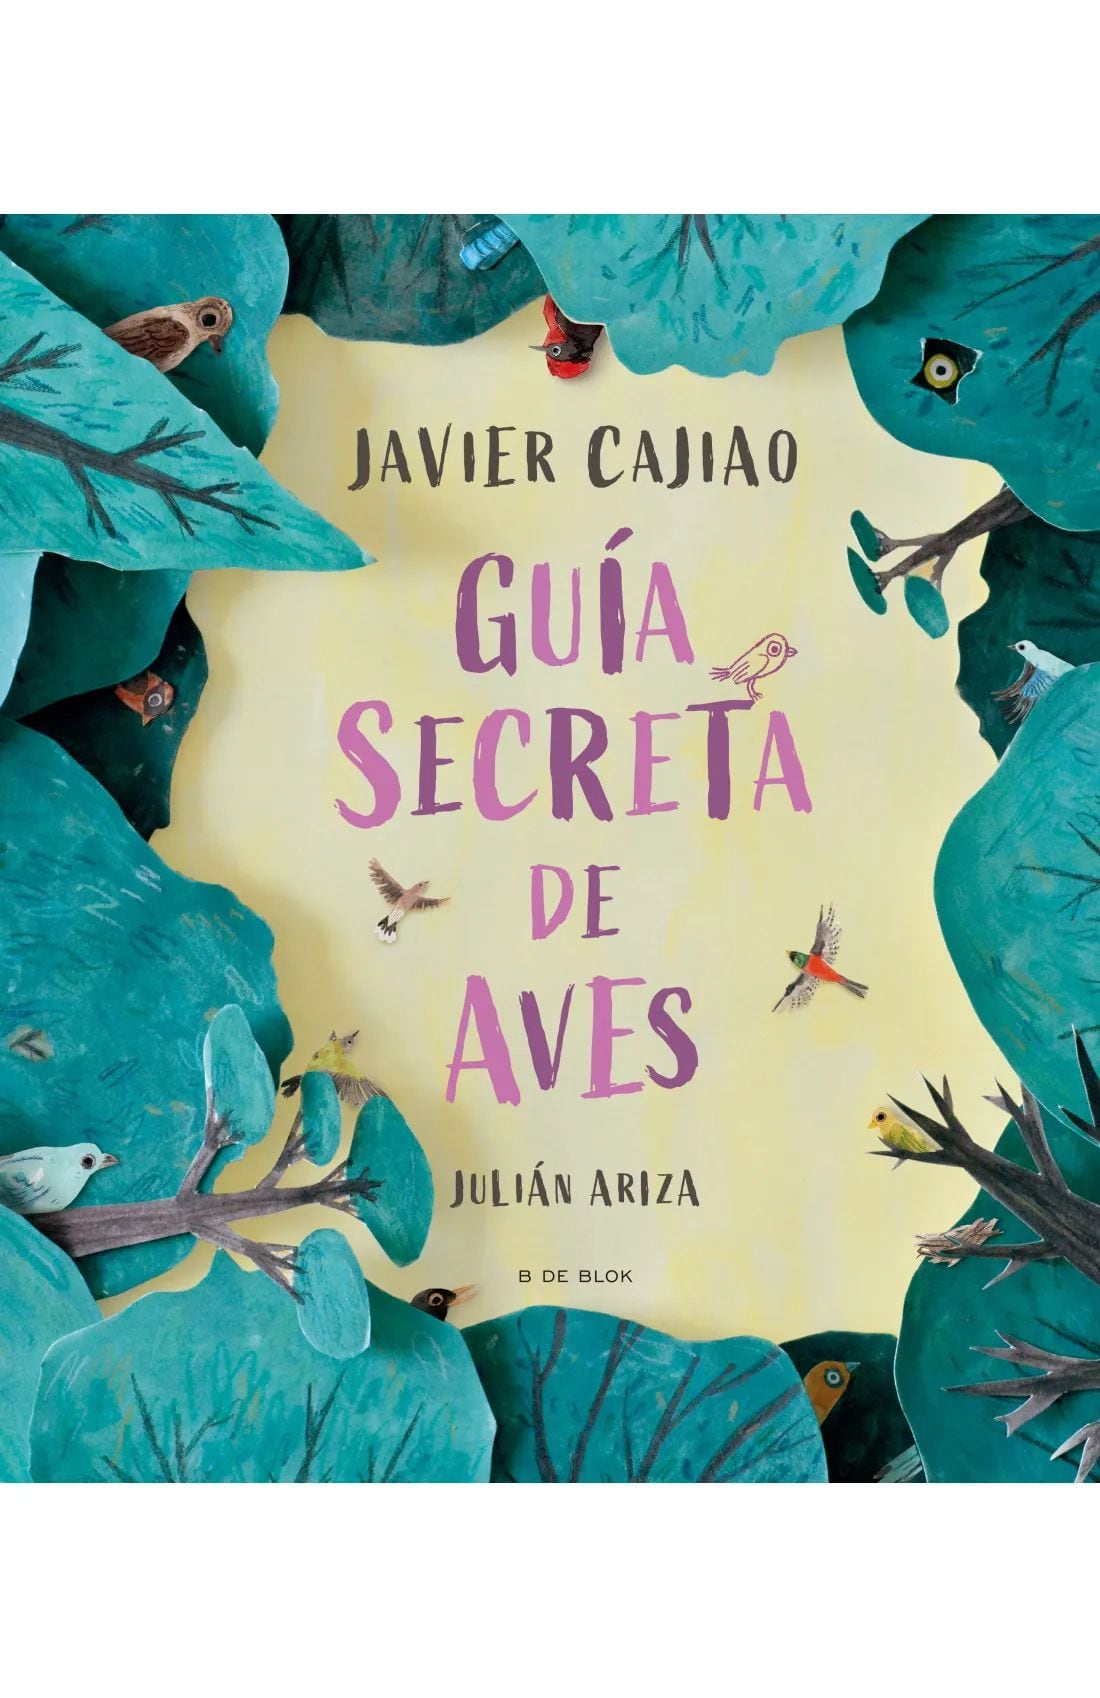 El libro cuenta con ilustraciones del artista colombiano Julián Ariza.